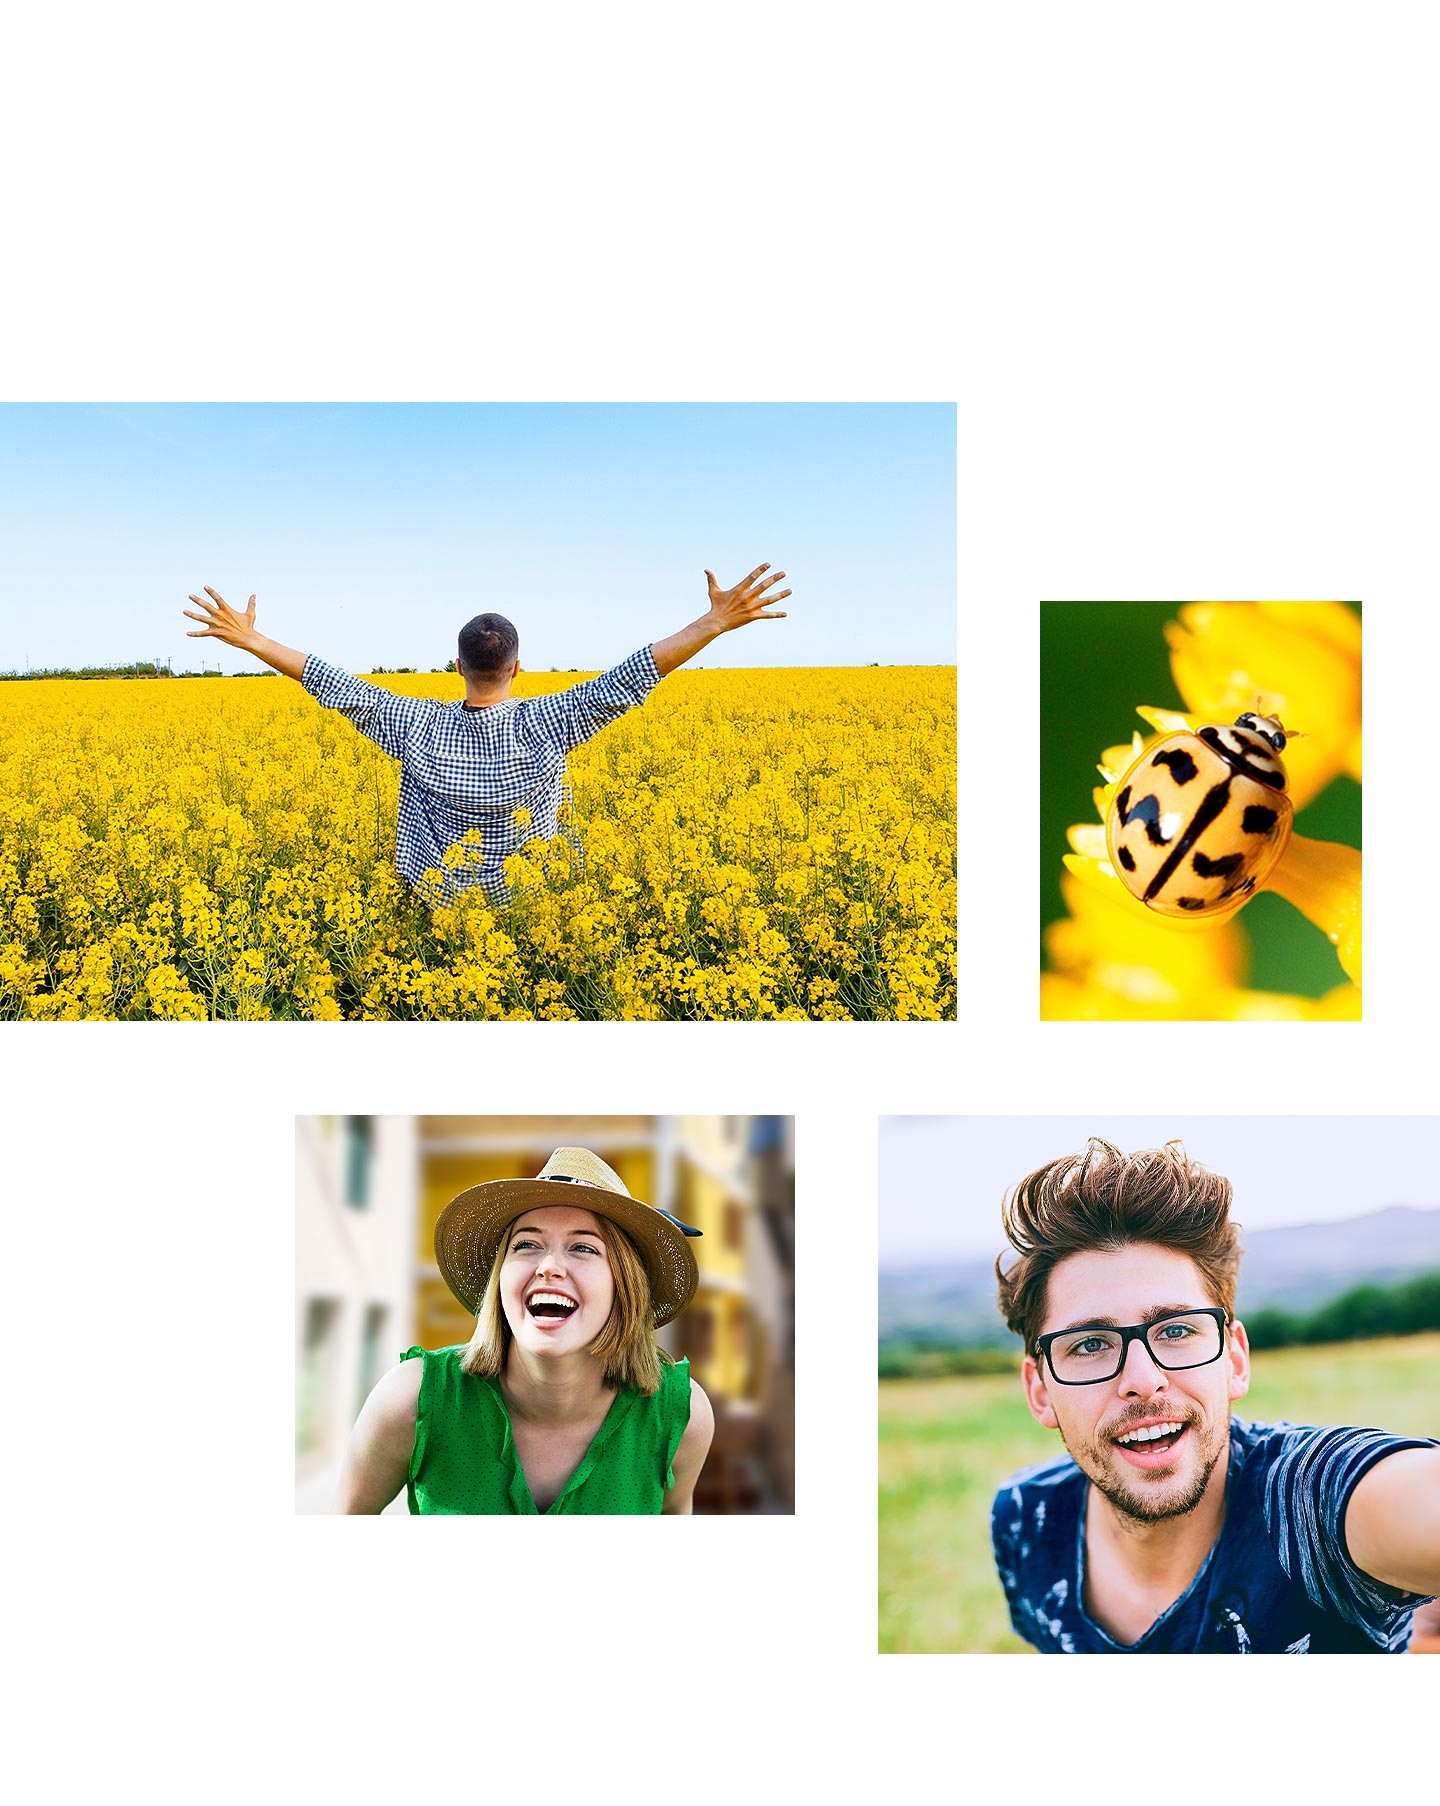 Fotografija snimljena glavnom kamerom prikazuje muškarca koji pokazuje leđa i širi ruke usred ogromnog polja žutog cvijeća. Druga fotografija snimljena Macro kamerom prikazuje detaljan snimak žute bubamare. Fotografija snimljena dubinskom kamerom prikazuje portret nasmejane žene. Na kraju, pokazuje se selfi muškarca snimljen prednjom kamerom.